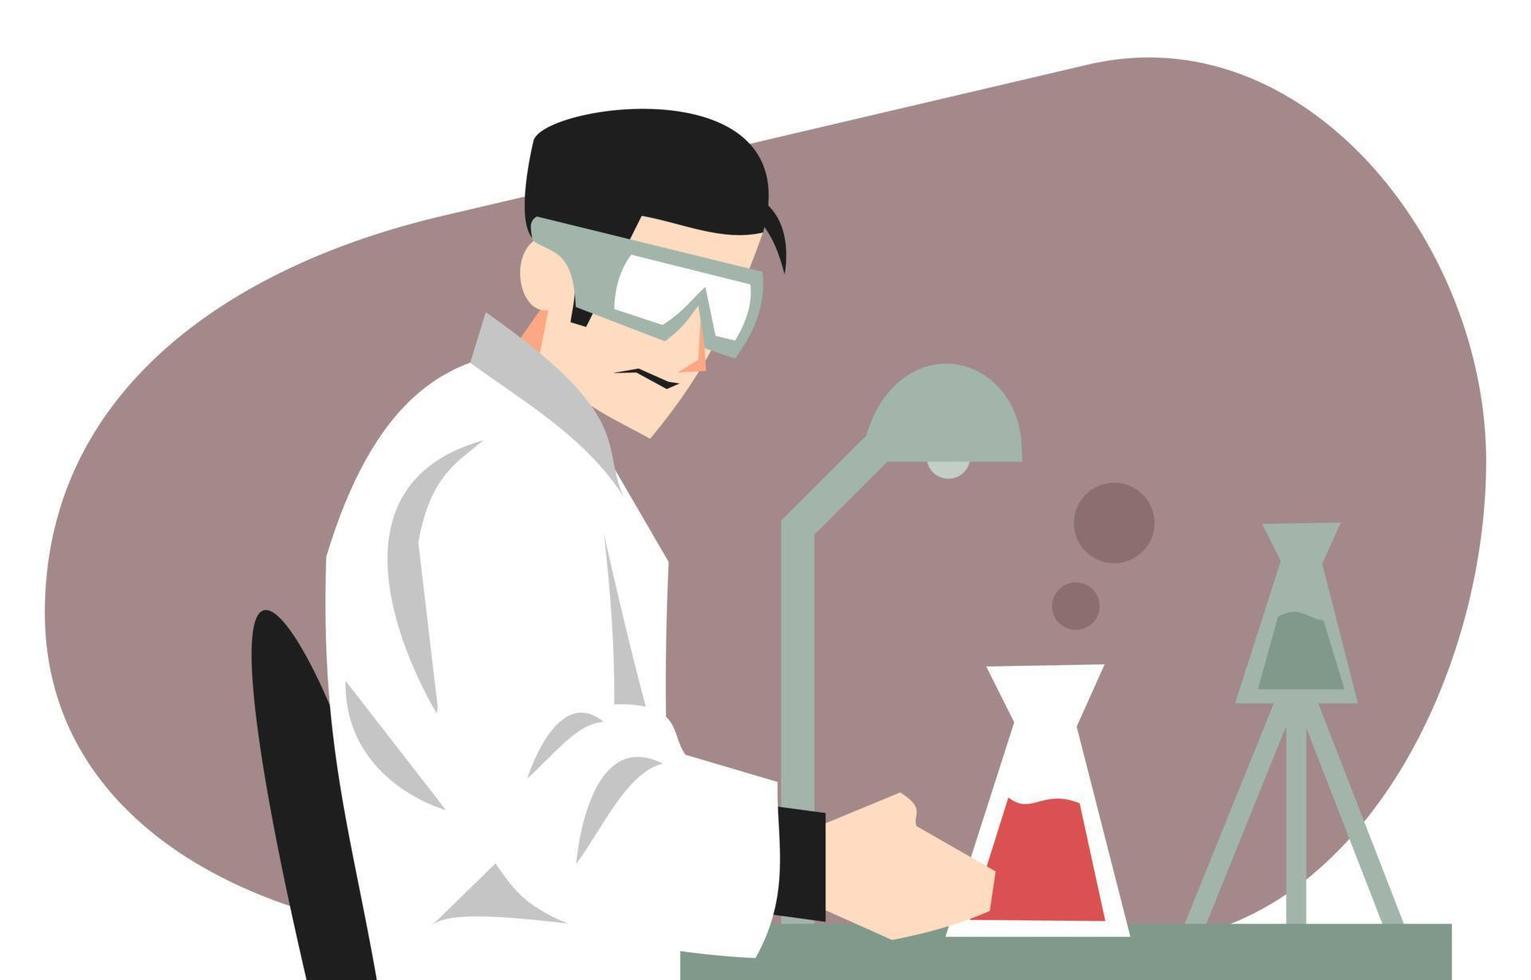 ilustração do cientista que trabalha no laboratório. temas de ciência, trabalho, experimentação, medicina, farmácia, criação, etc. vetor plano